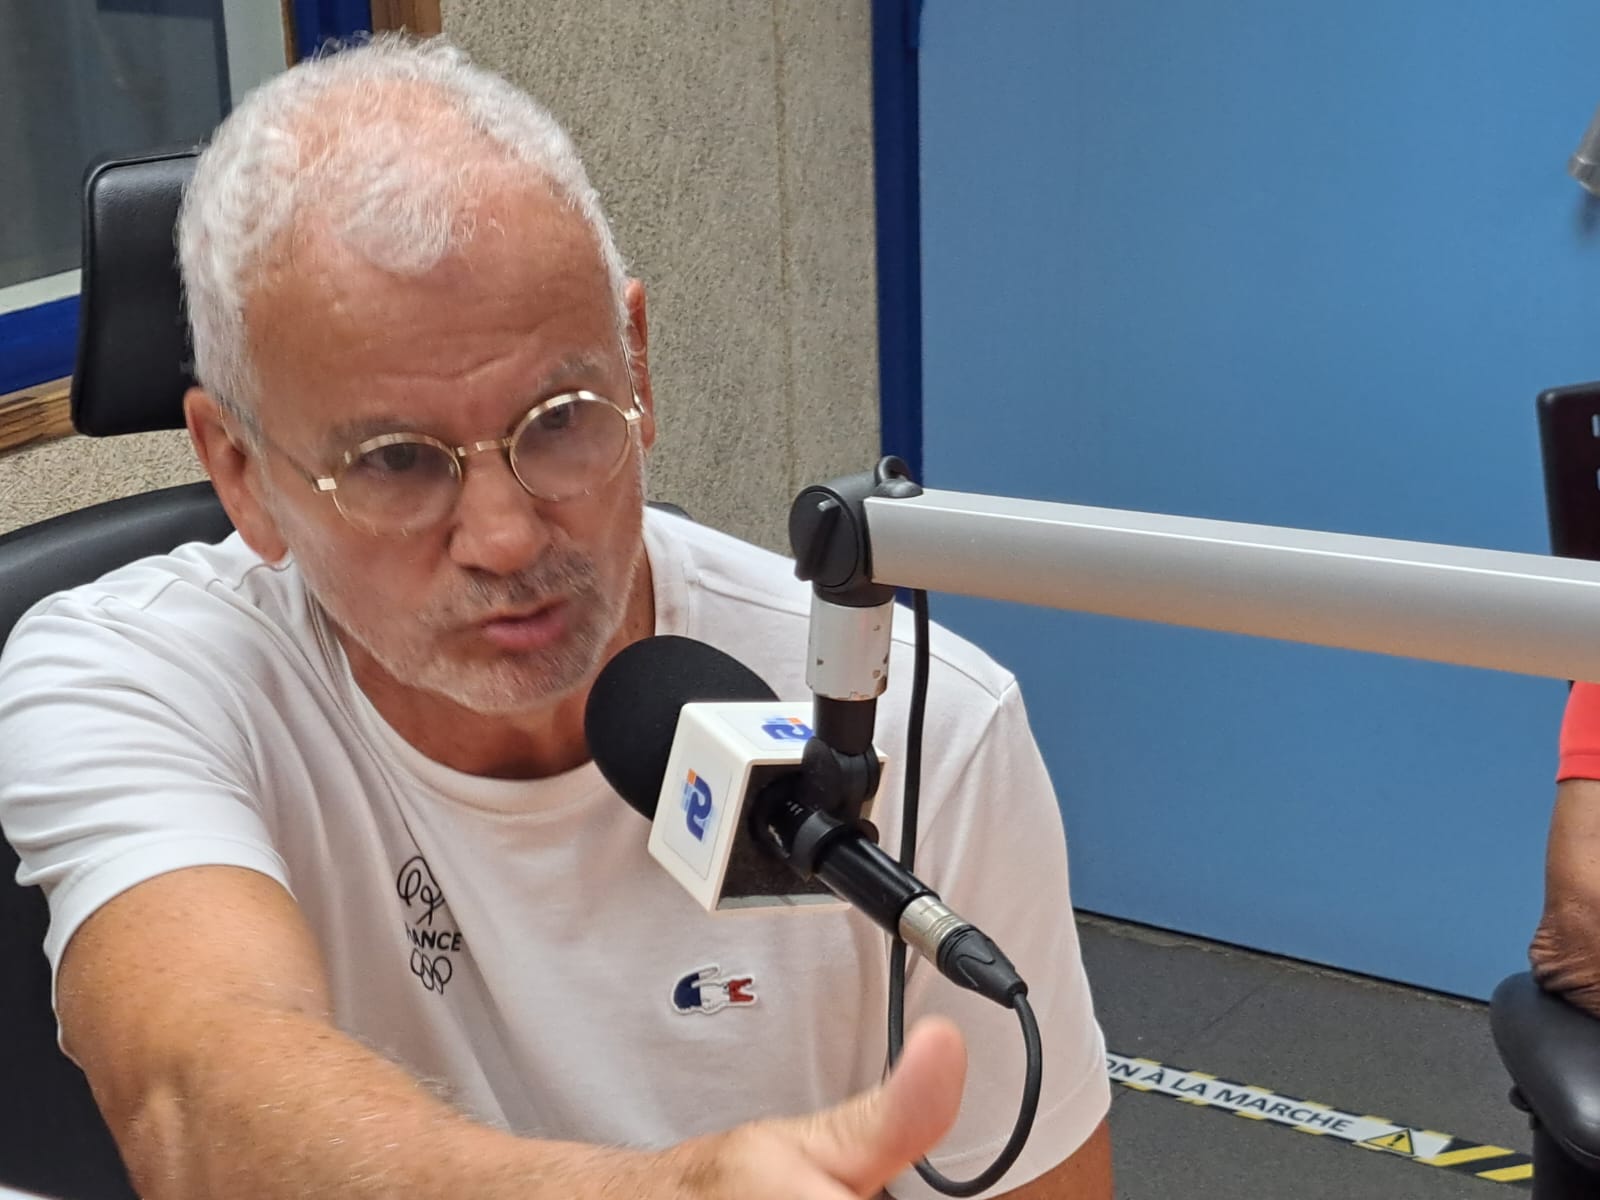     « La Guadeloupe est un diamant du handball mondial » (Philippe Bana)

